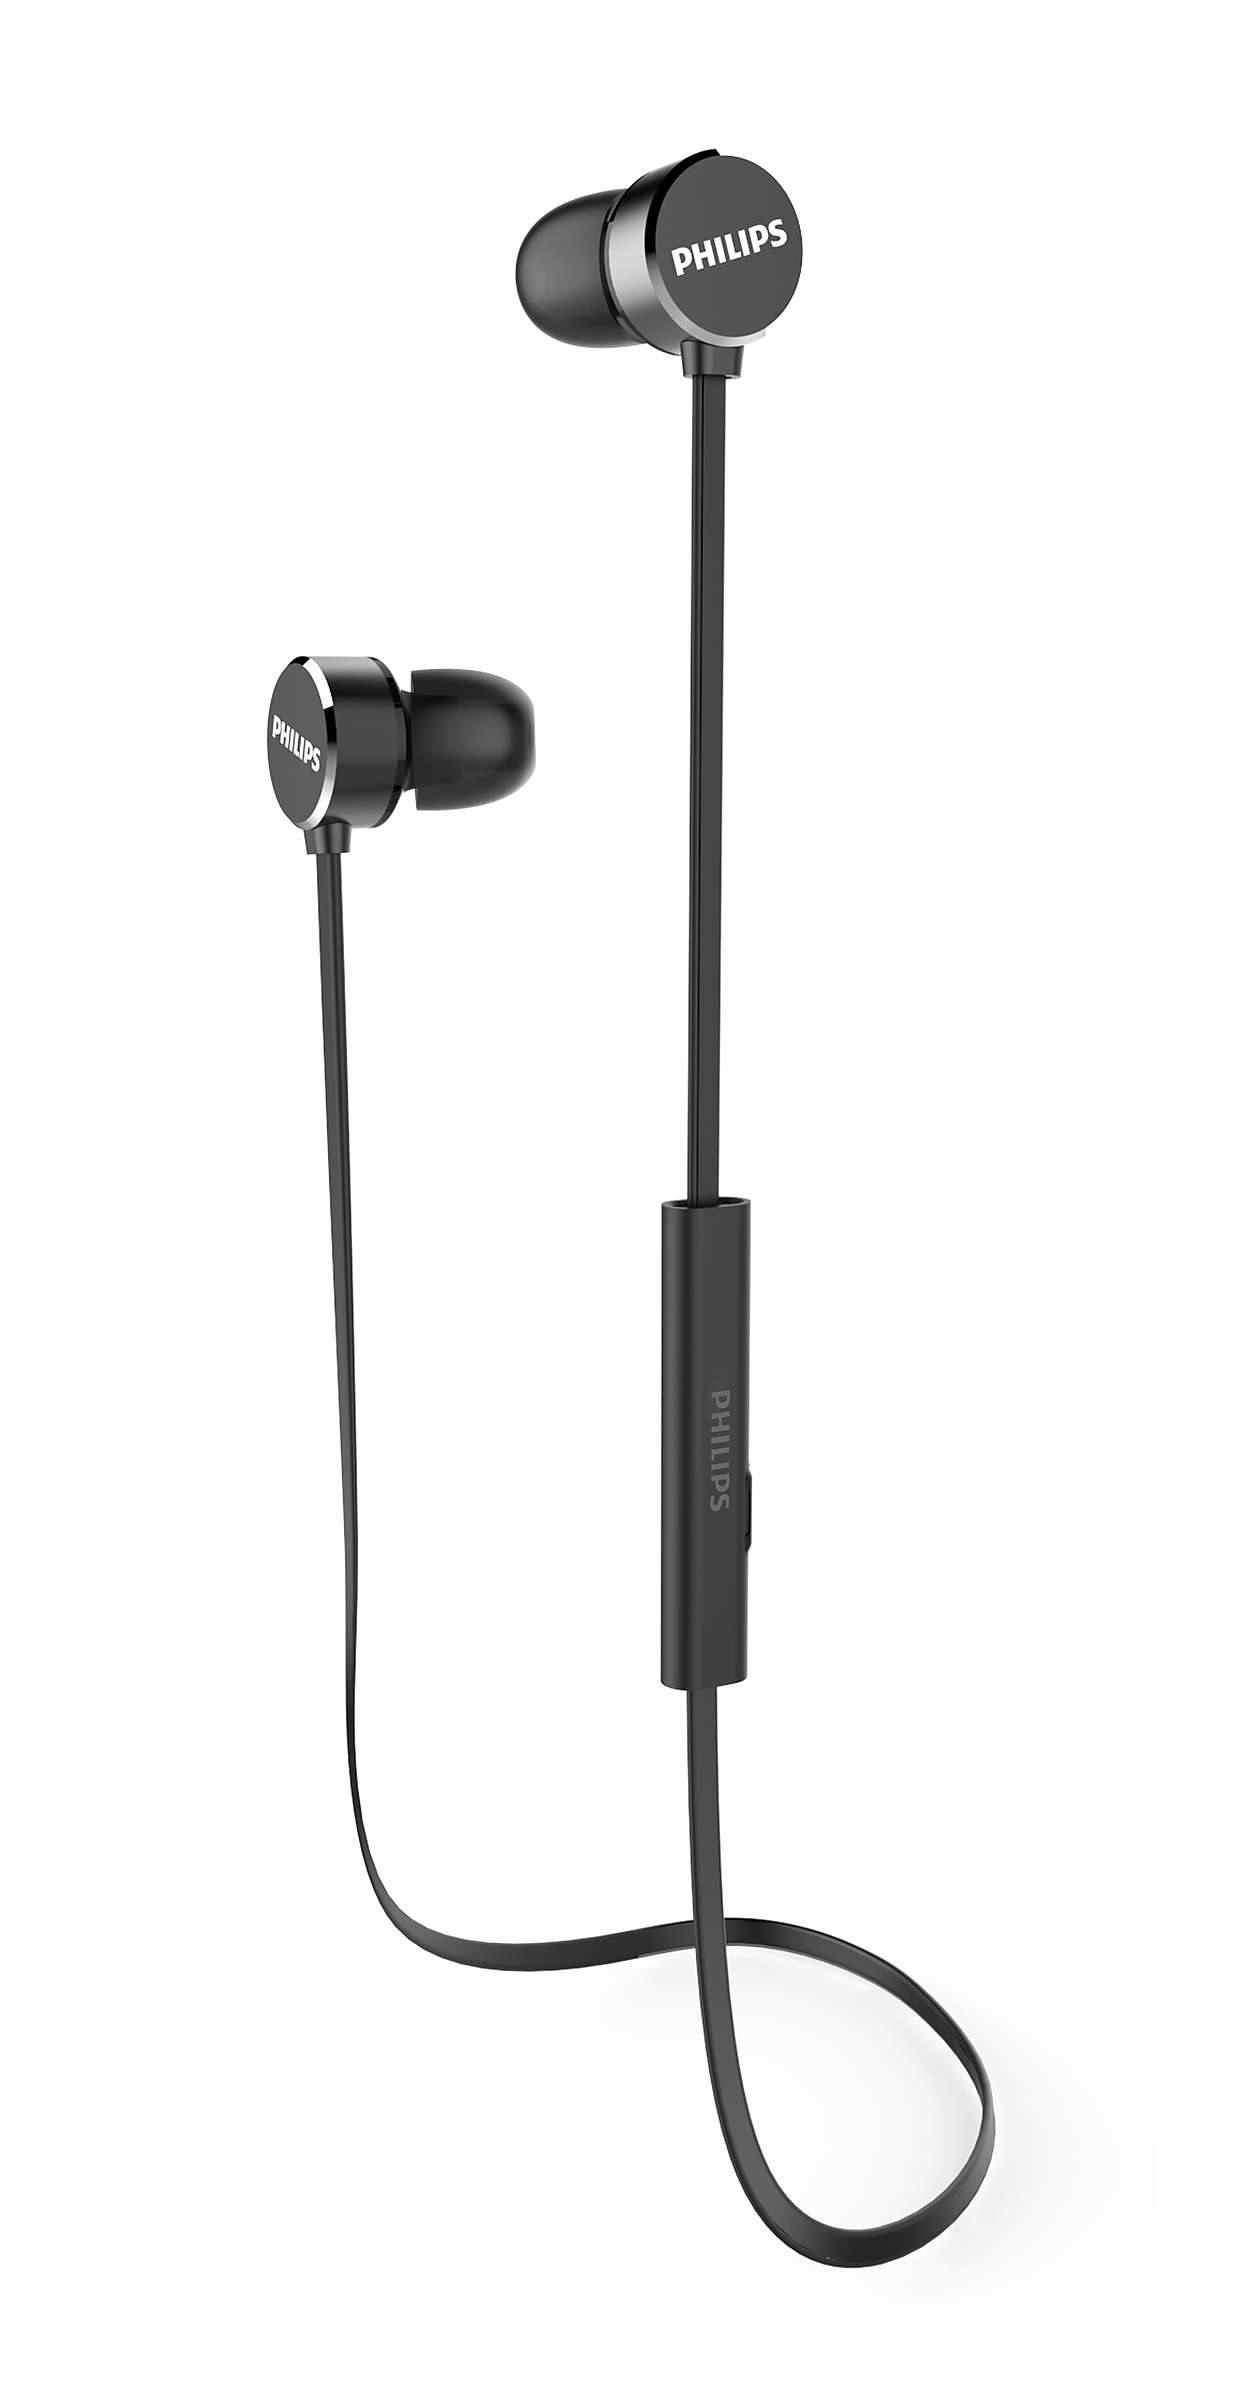 kırık sivrisinek hasar  Wireless headphones with mic TAUN102BK/27 | Philips